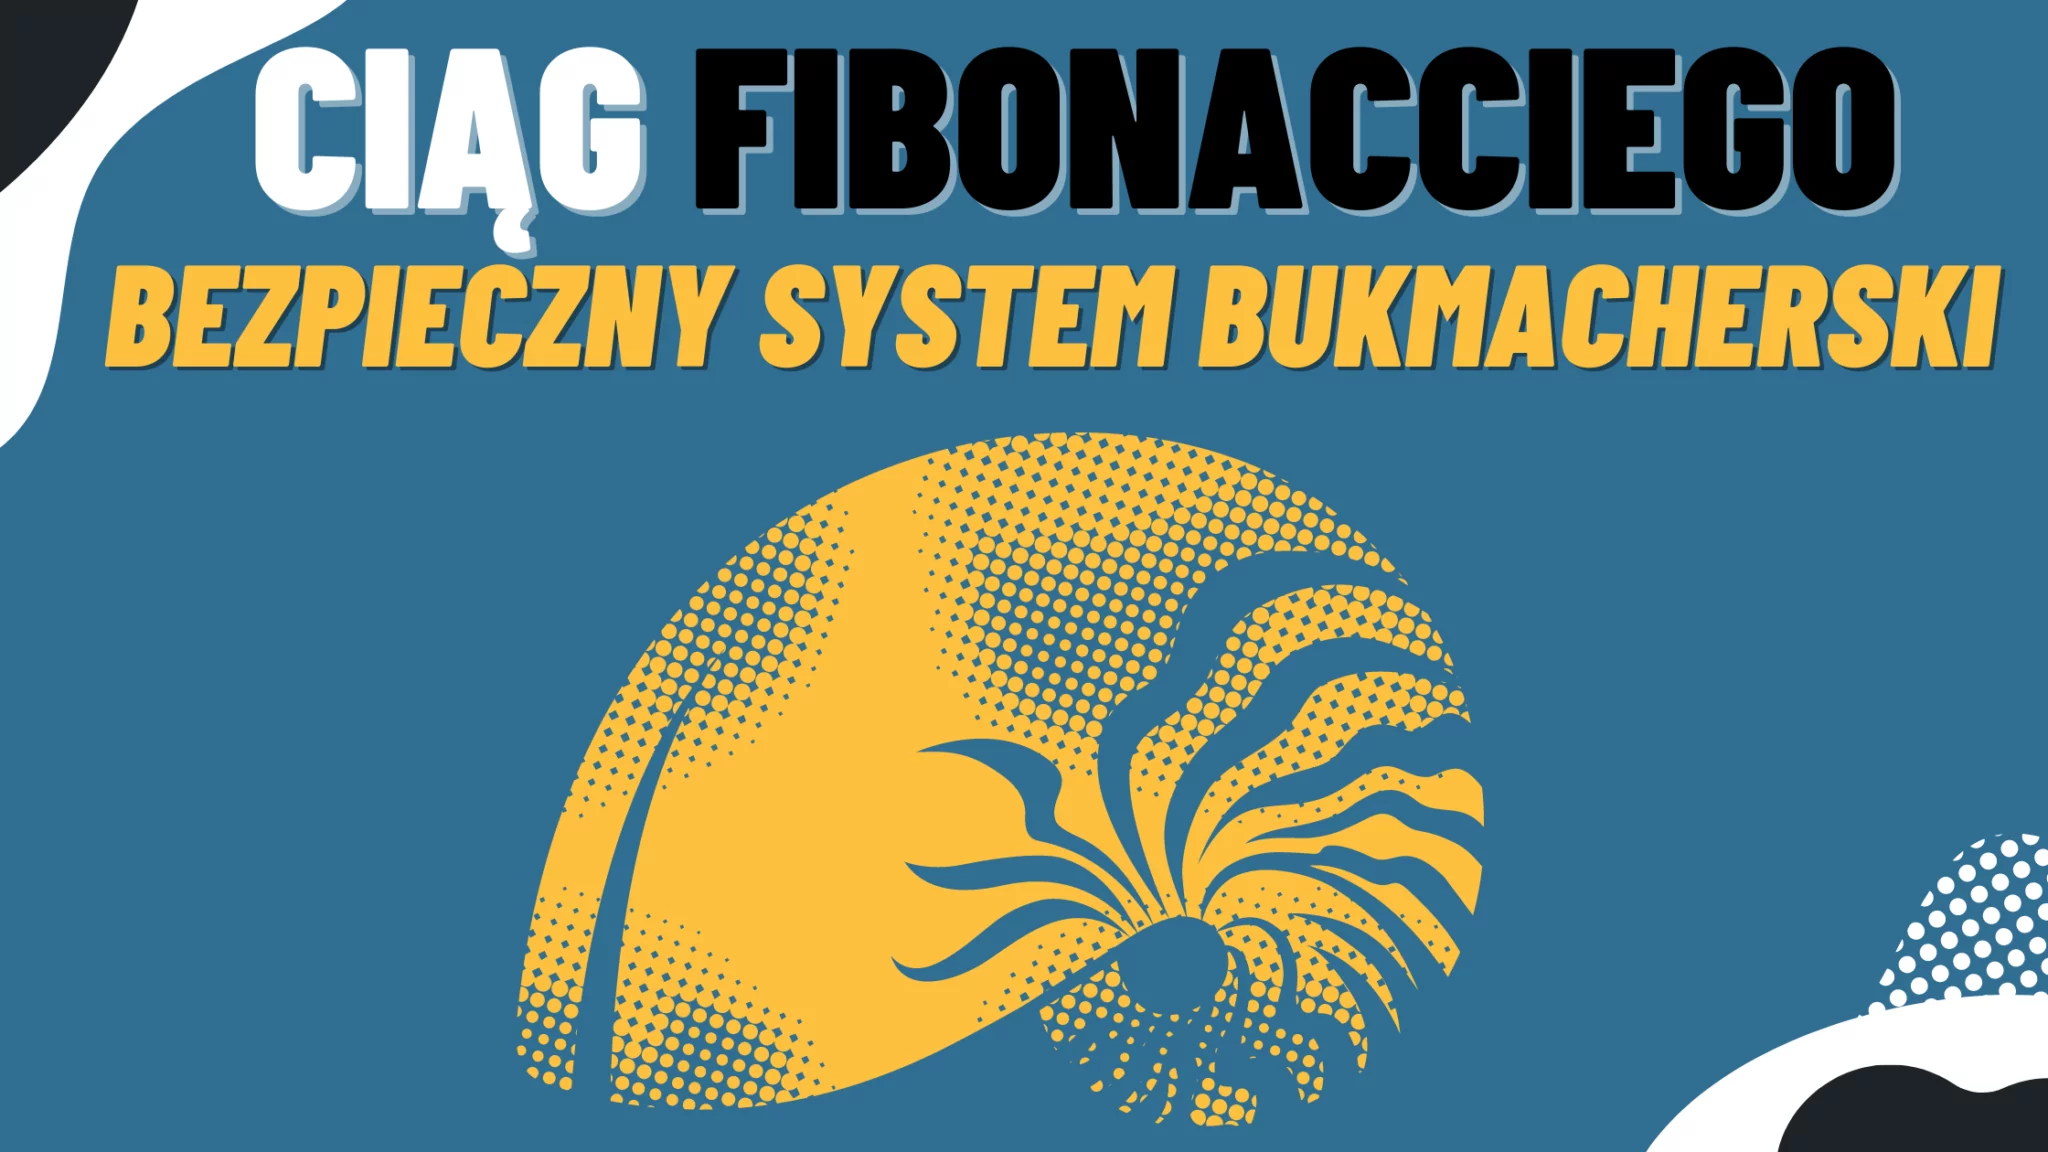 System bukmacherski ciąg Fibonacciego - bezpieczny system bukmacherski 